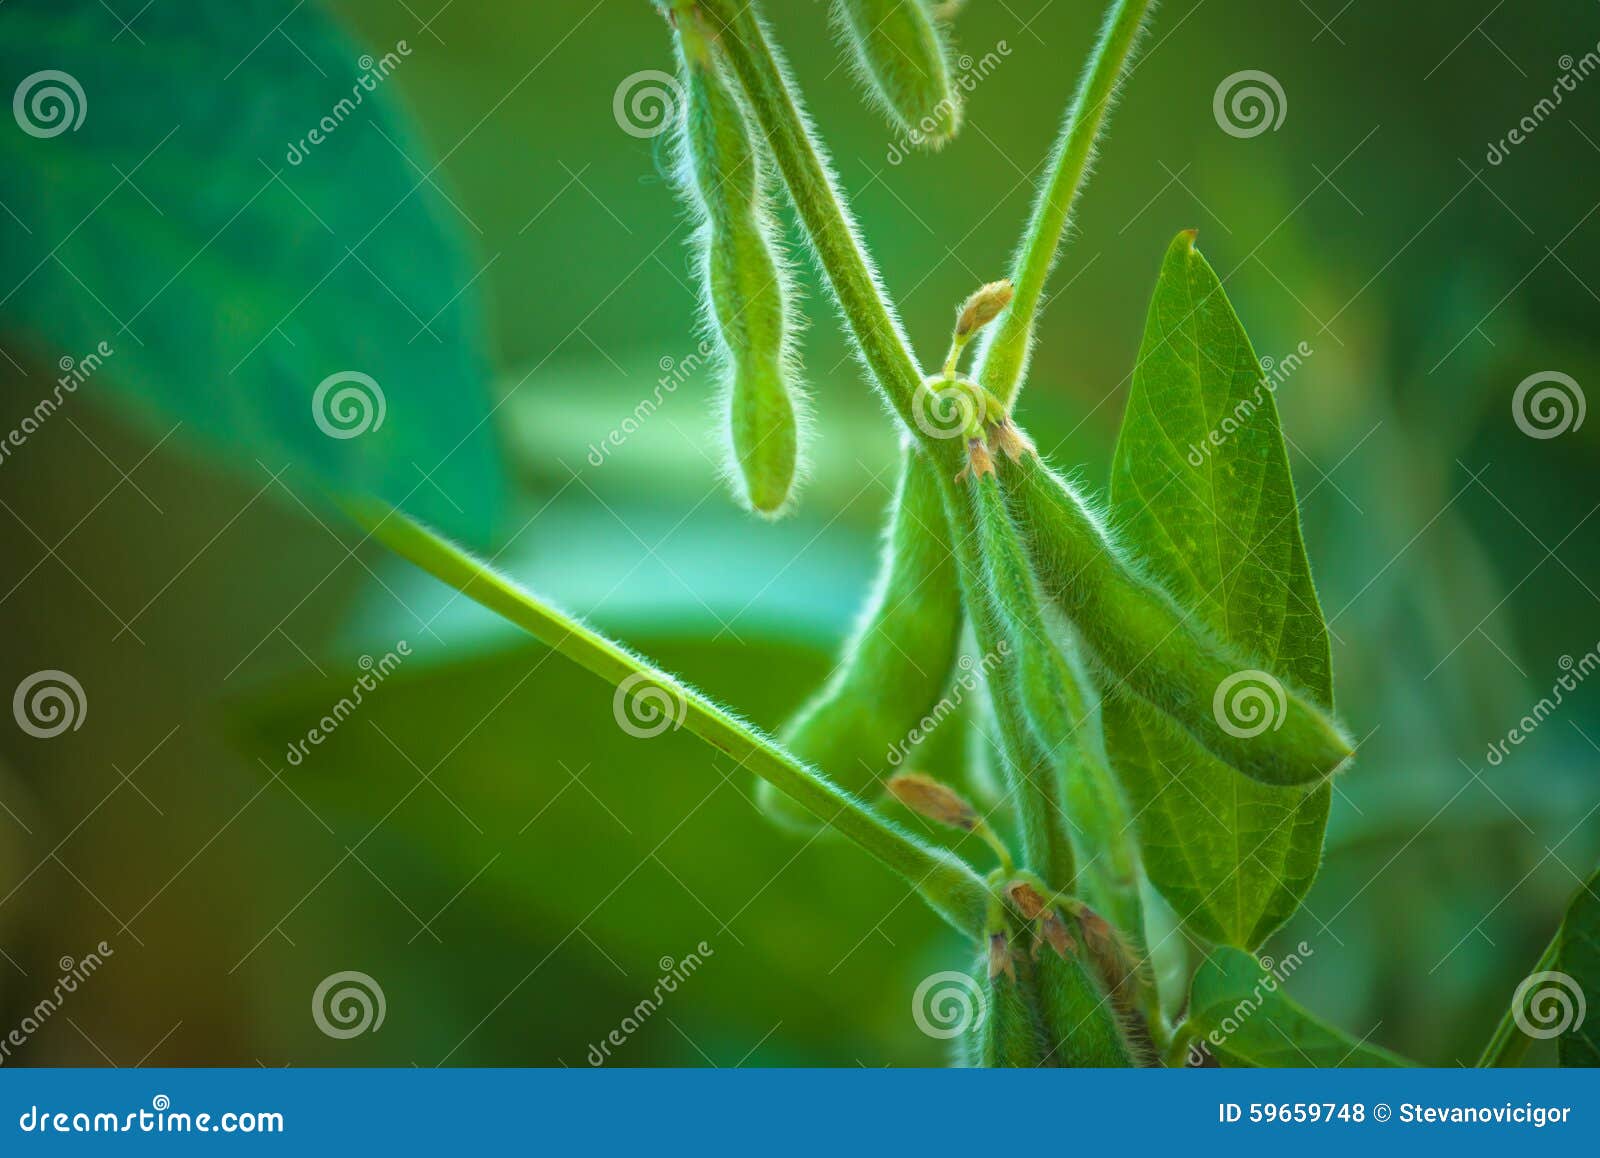 soybean crops in field